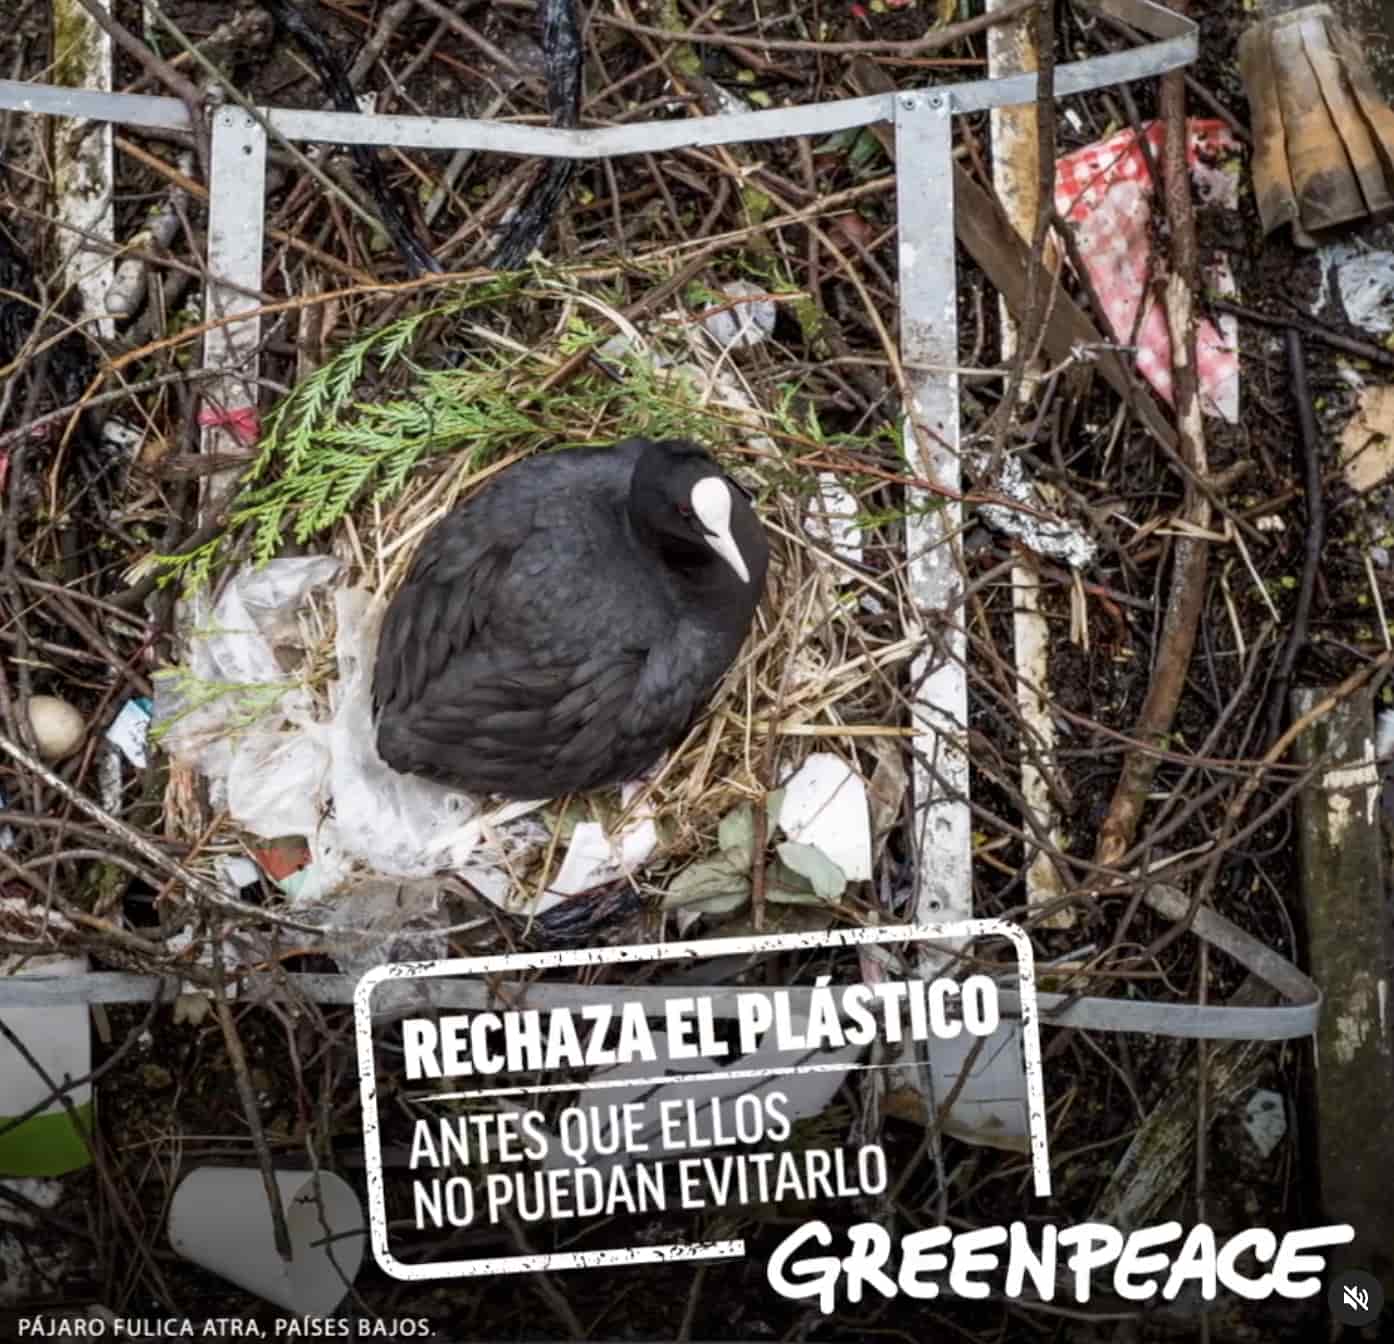 Ejemplo de diseño publicitario extraordinario de Greenpeace Chile